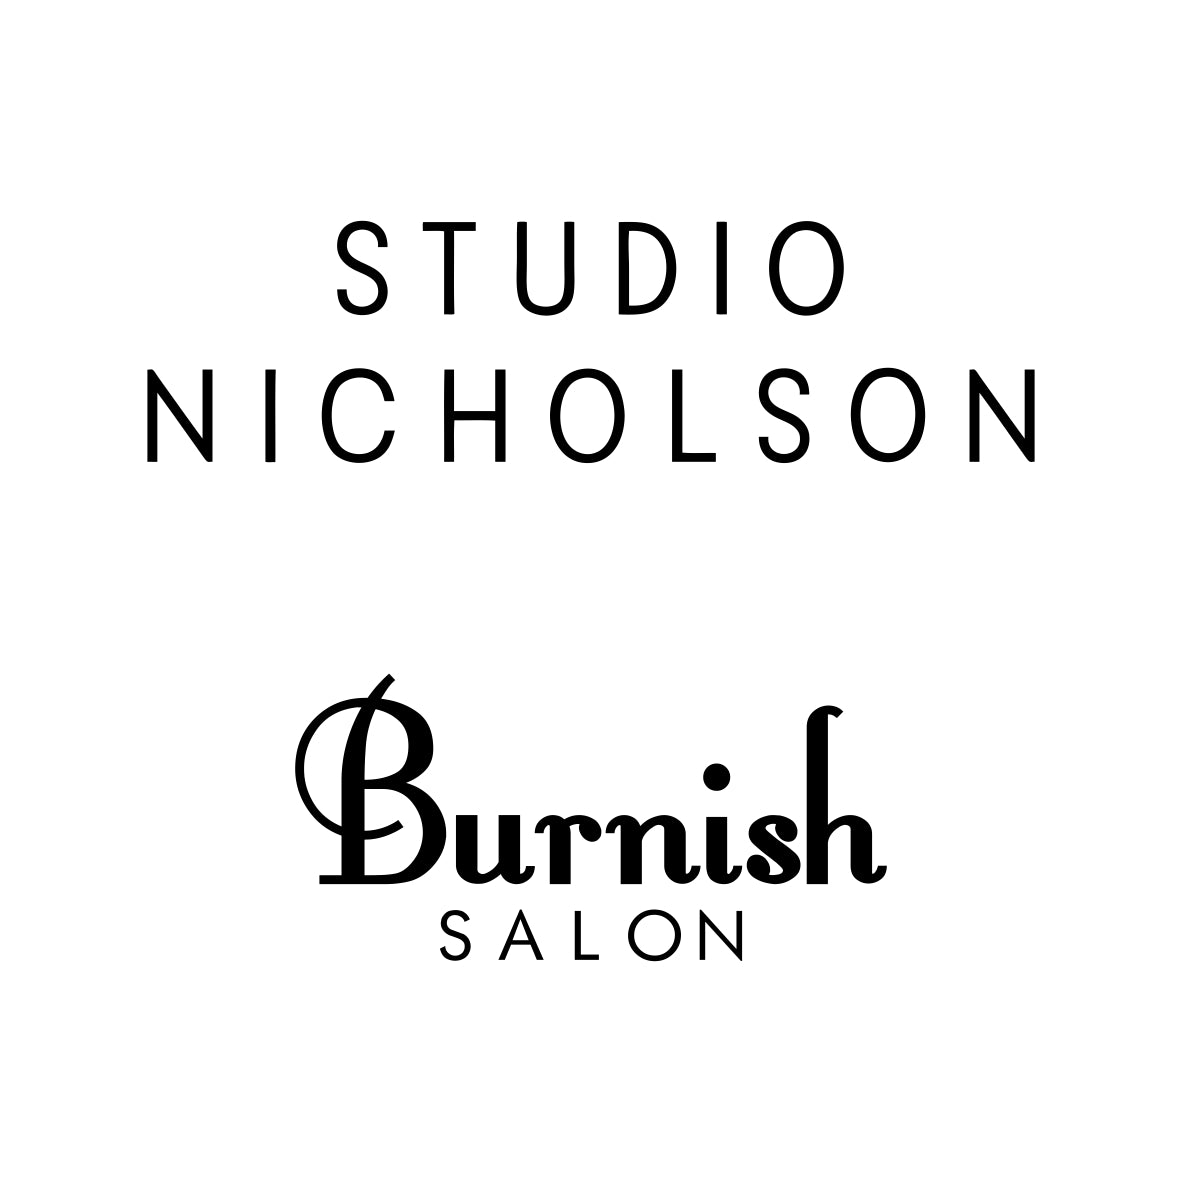 STUDIO NICHOLSON @Burnish SALON